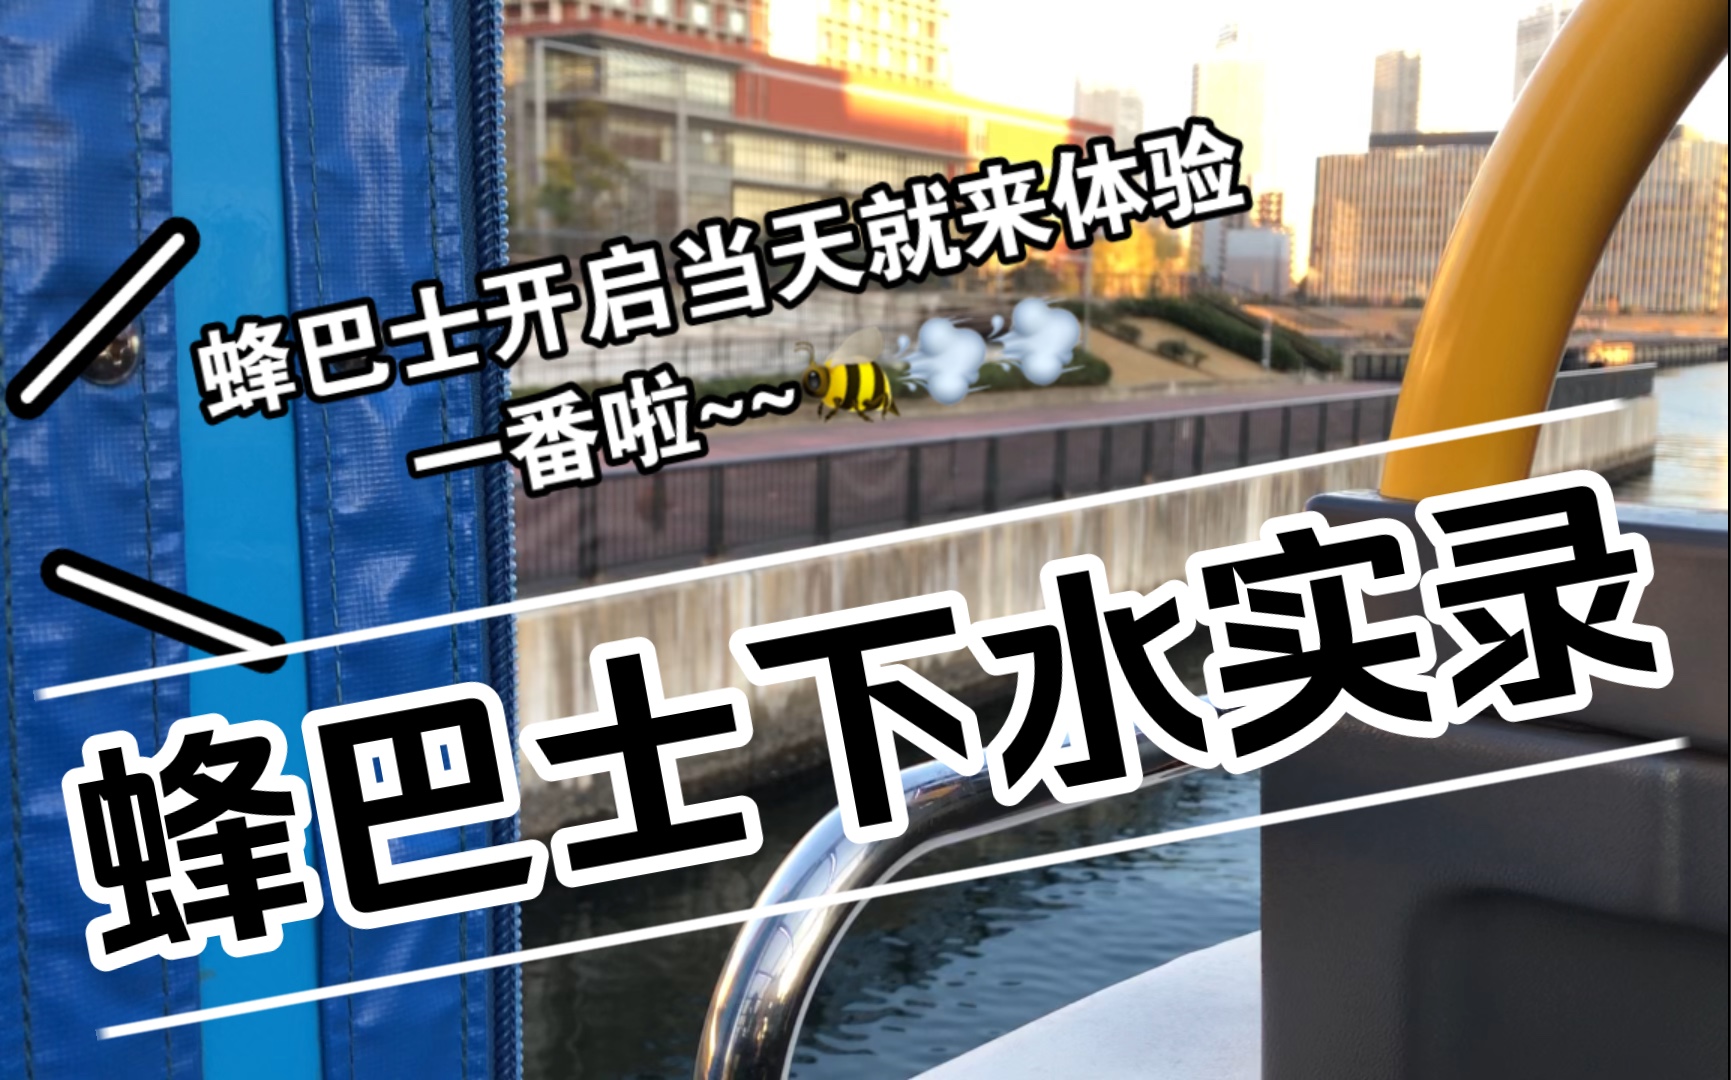 【偶像梦幻祭】Crazy:B联动东京台场水陆两用巴士-蜂bus 下水实录 疯bee冲鸭